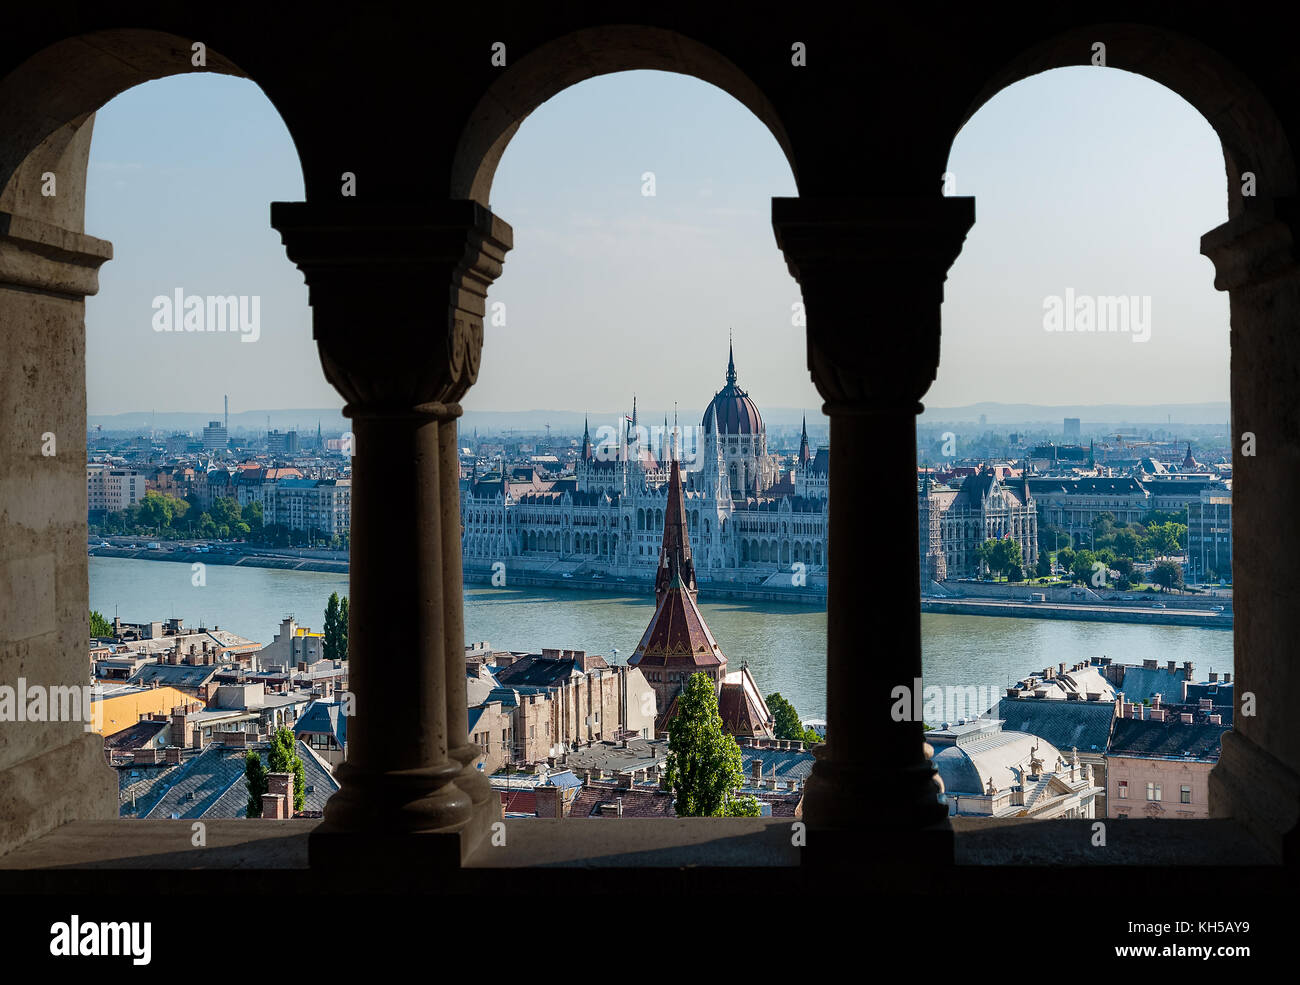 Vista del parlamento húngaro en Budapest y a través del arco de Fisherman's Bastion - Hungría Foto de stock